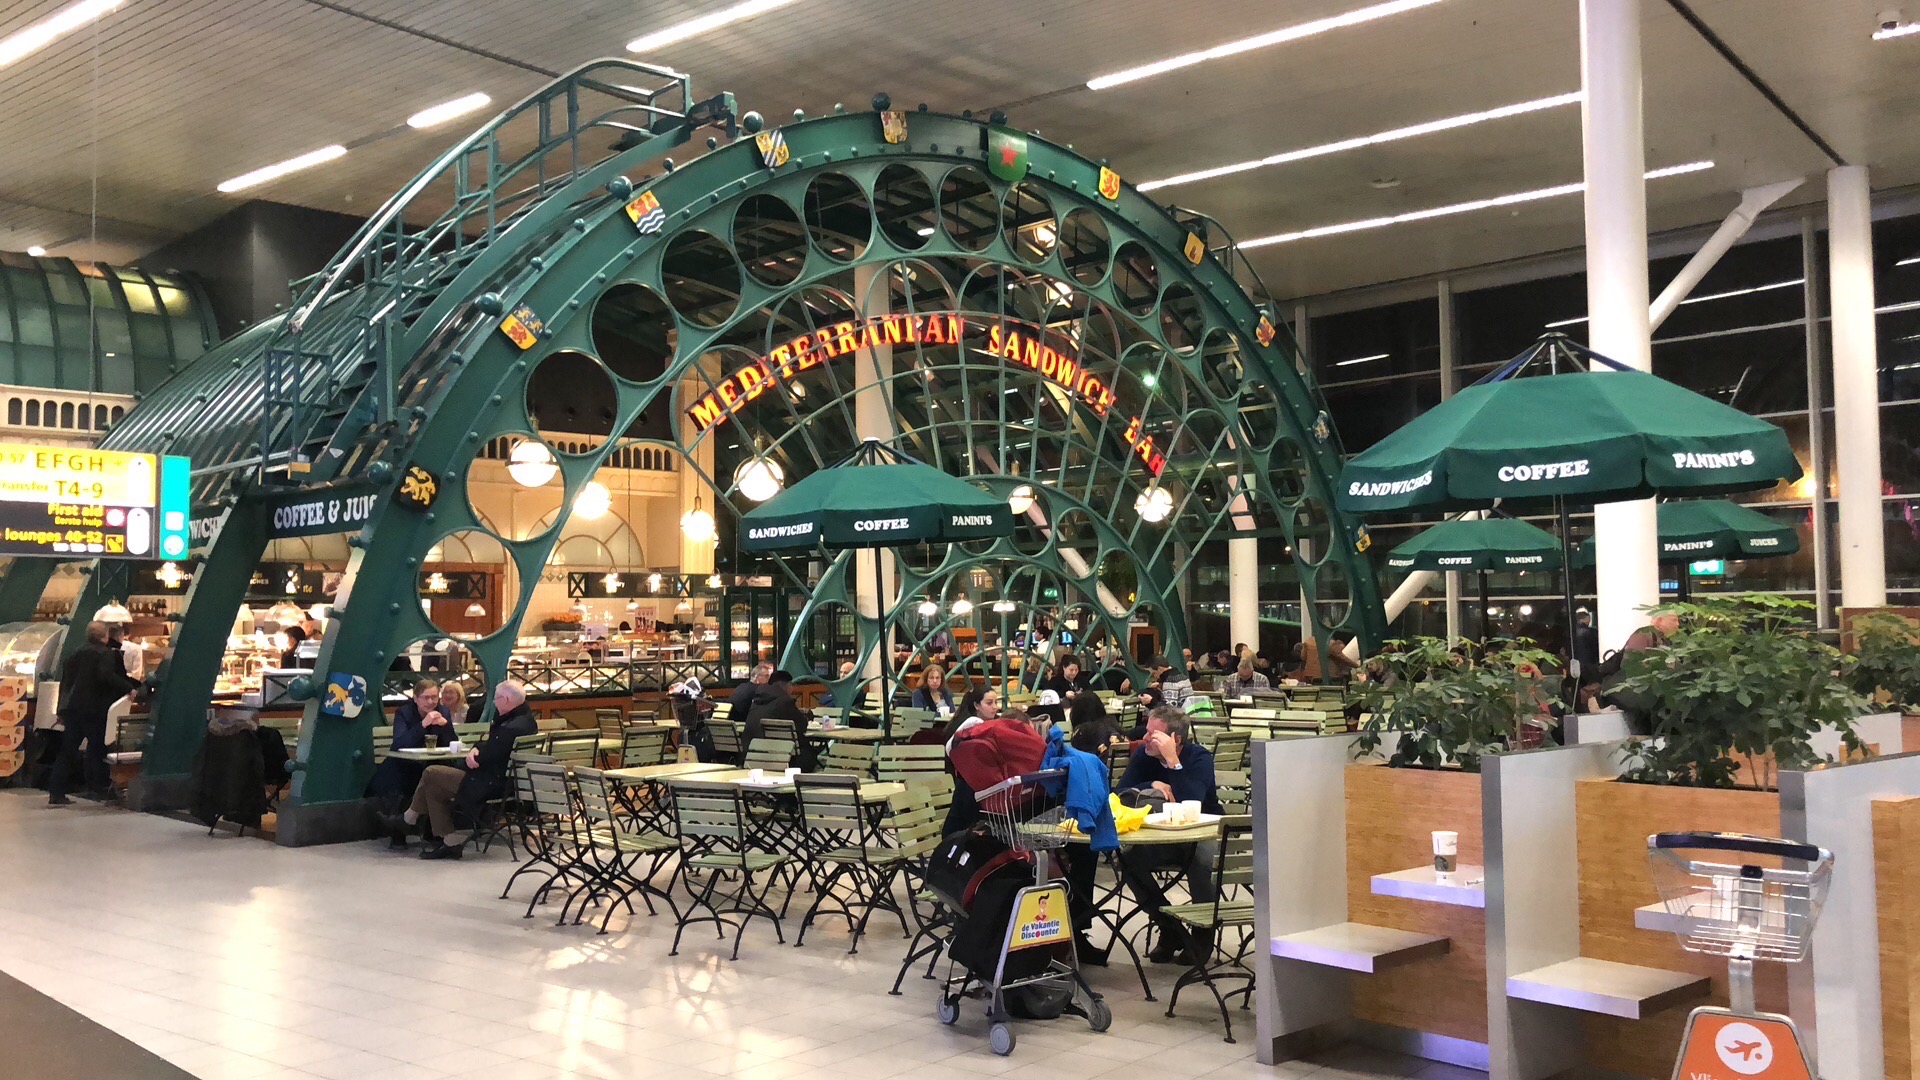 上次去德国开会时转机路过的阿姆斯特丹机场，荷兰的设计还是全球有名的，机场耶处处体现了人性化，过两个月